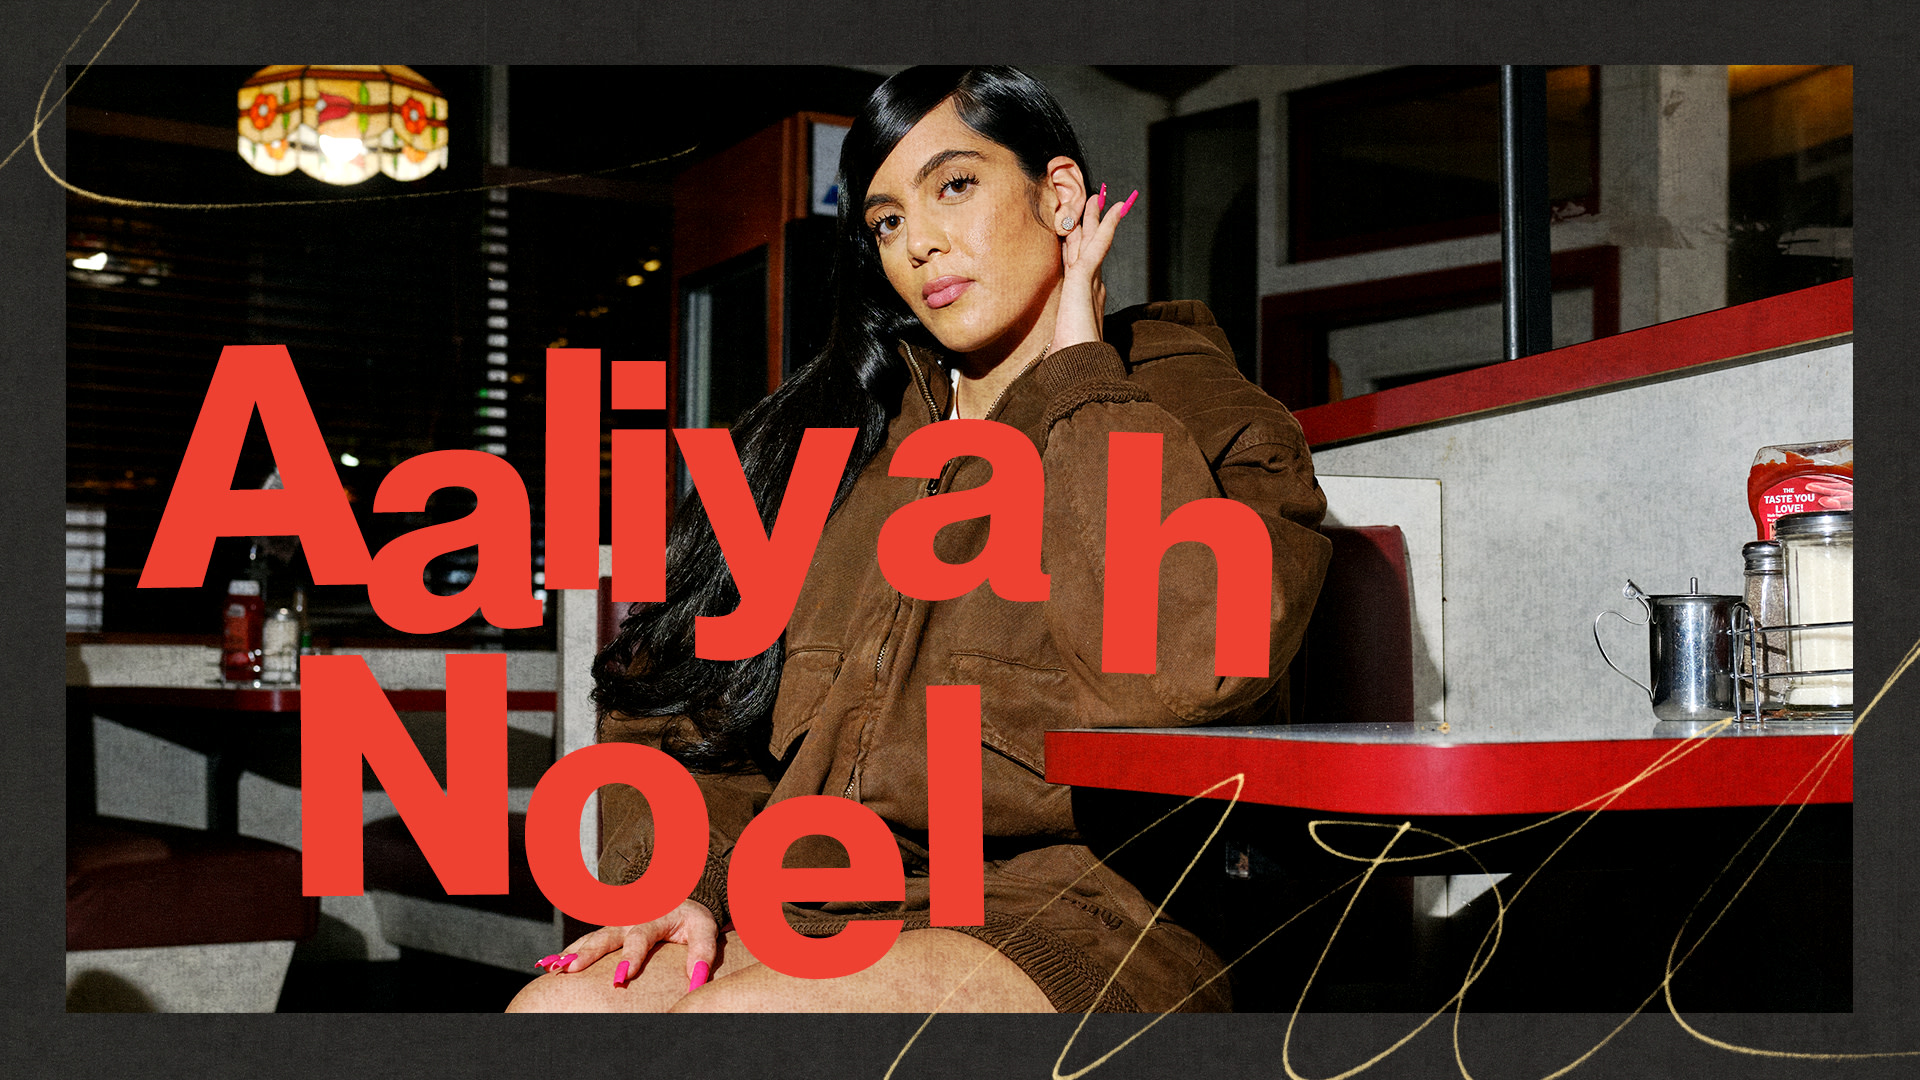 Aaliyah Noel